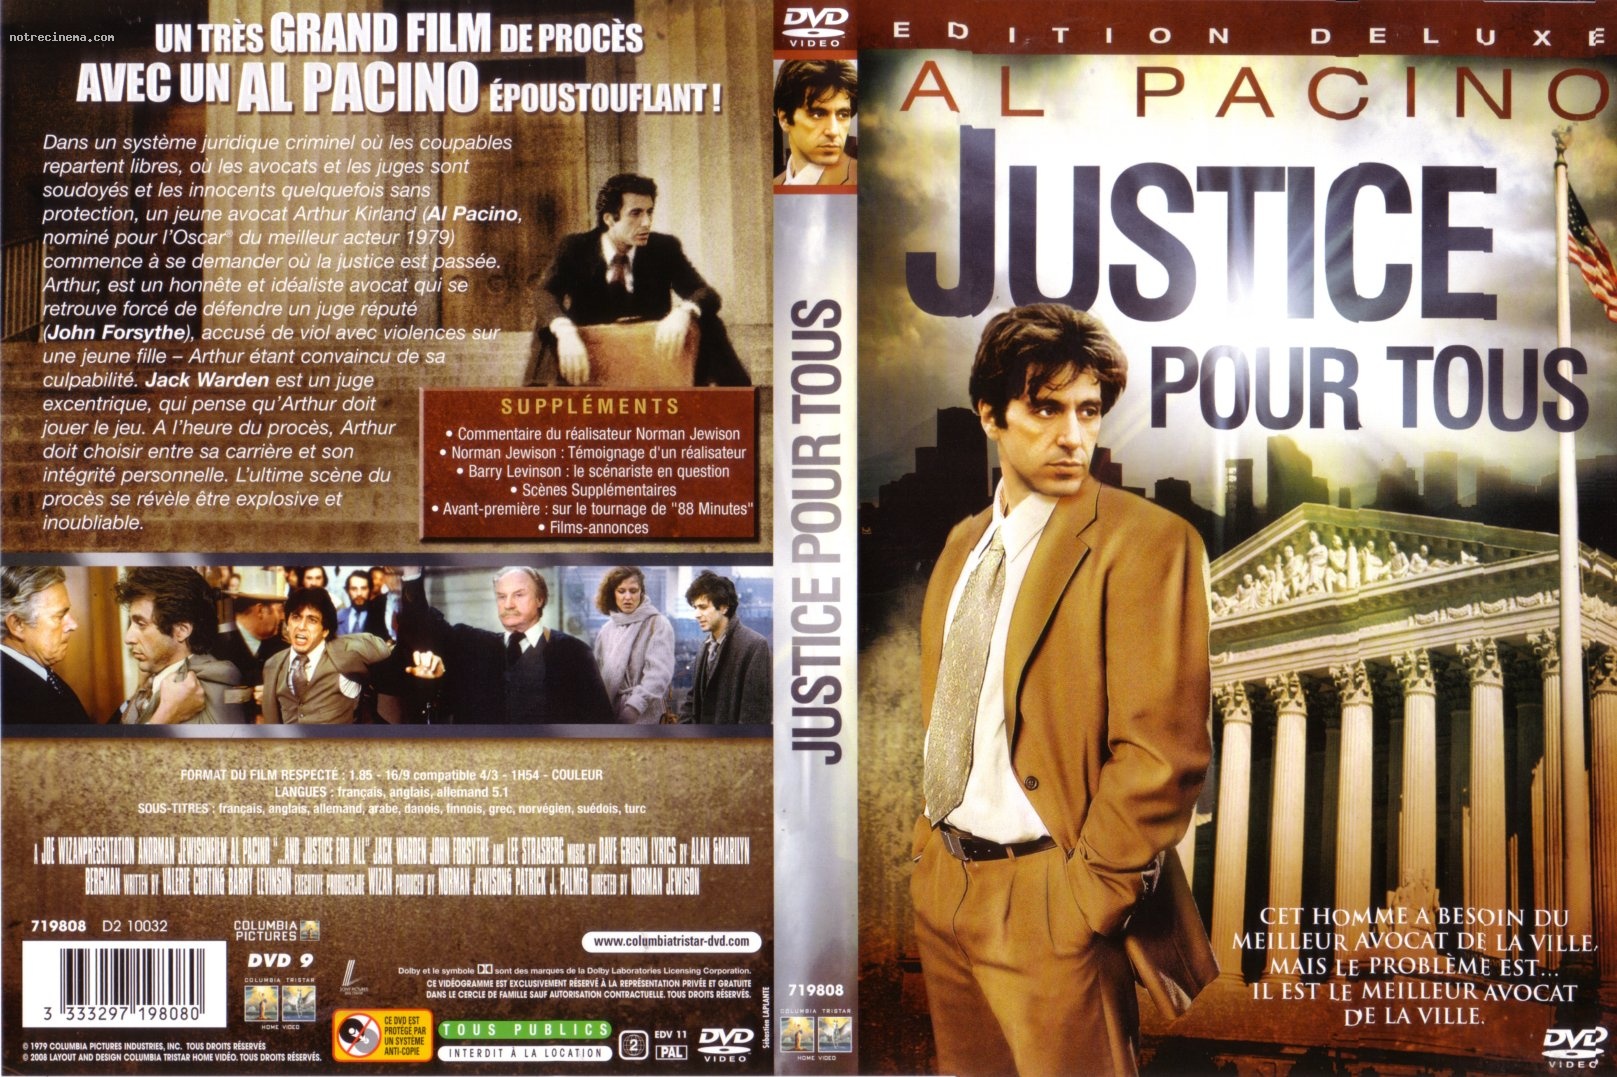 Jaquette DVD Justice pour tous v2